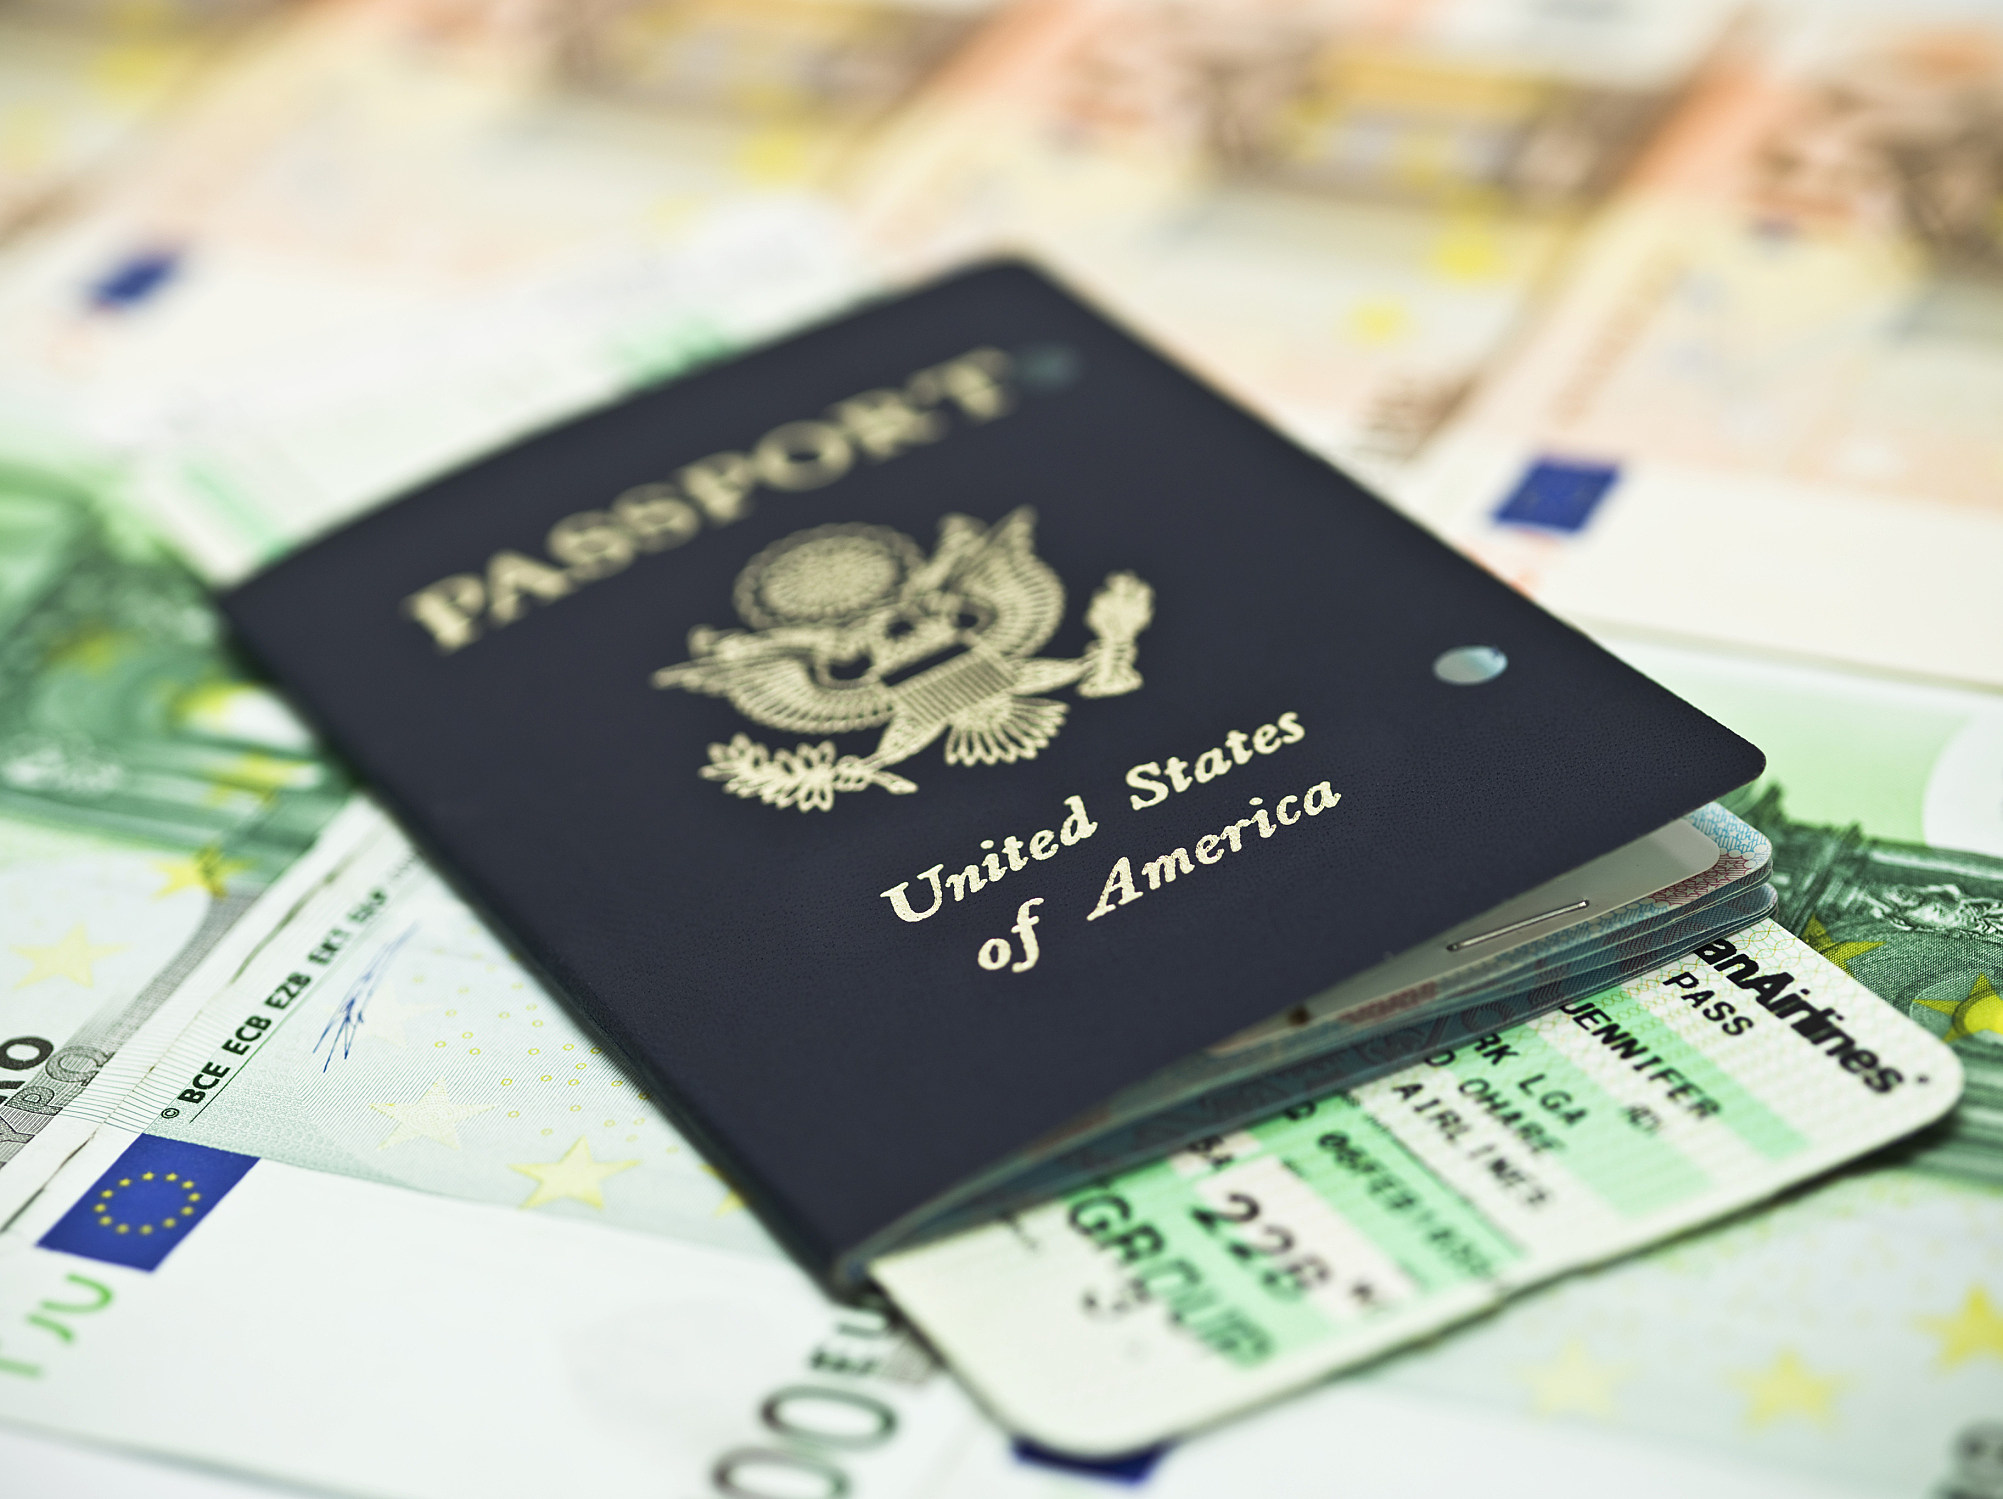 usps passport appointment scheduler